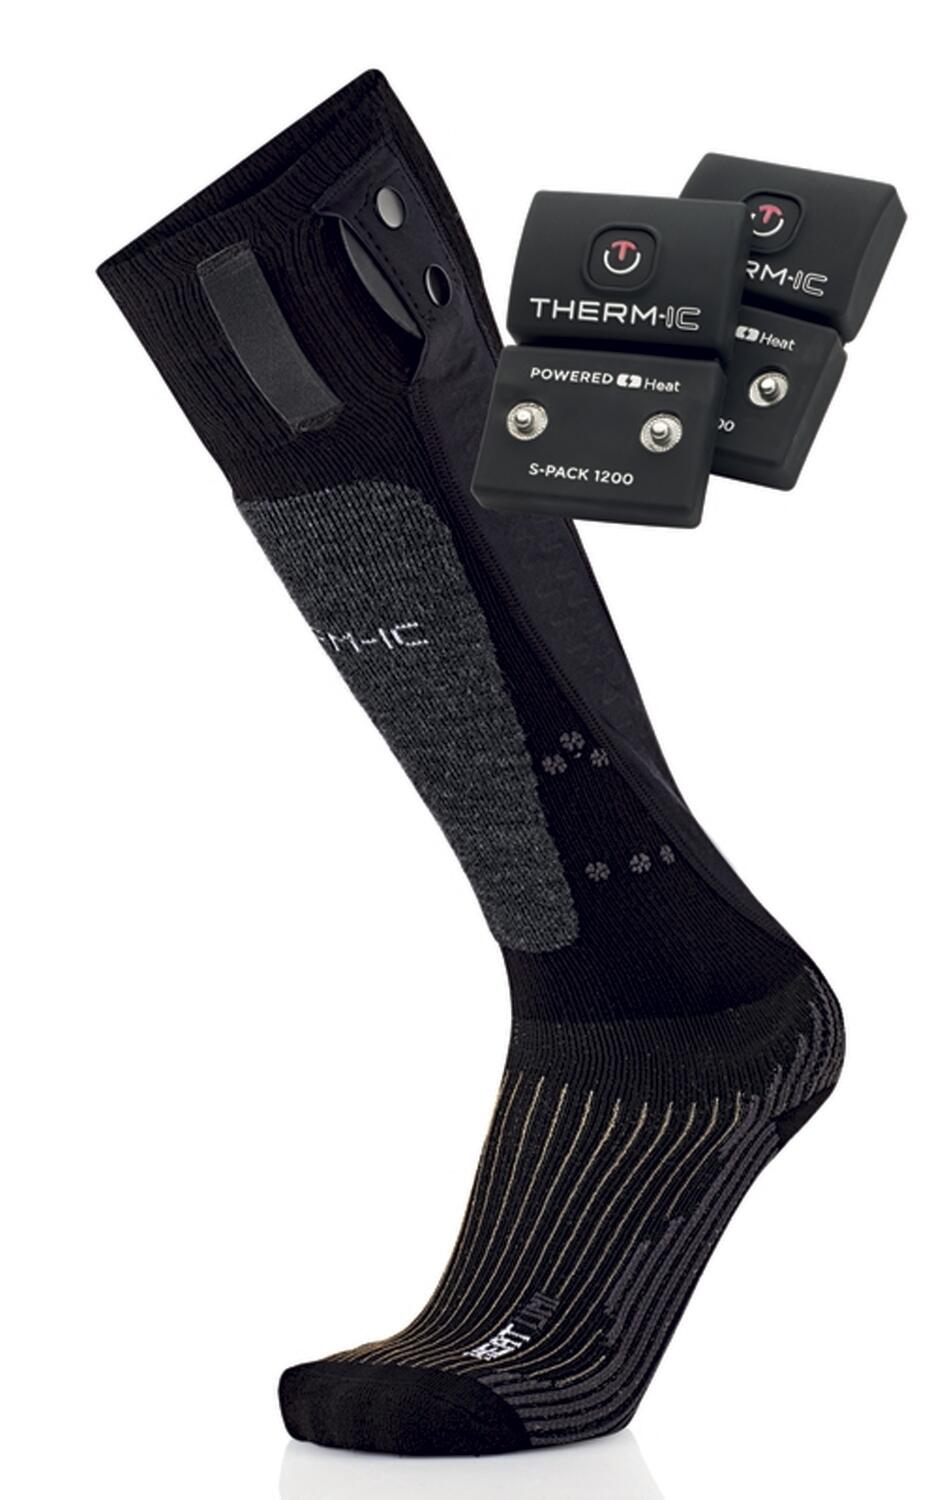 Therm-ic PowerSock Set Heat Uni+ SPack 1200 V2 (35.0 - 38.0, schwarz/grau) von Therm-ic